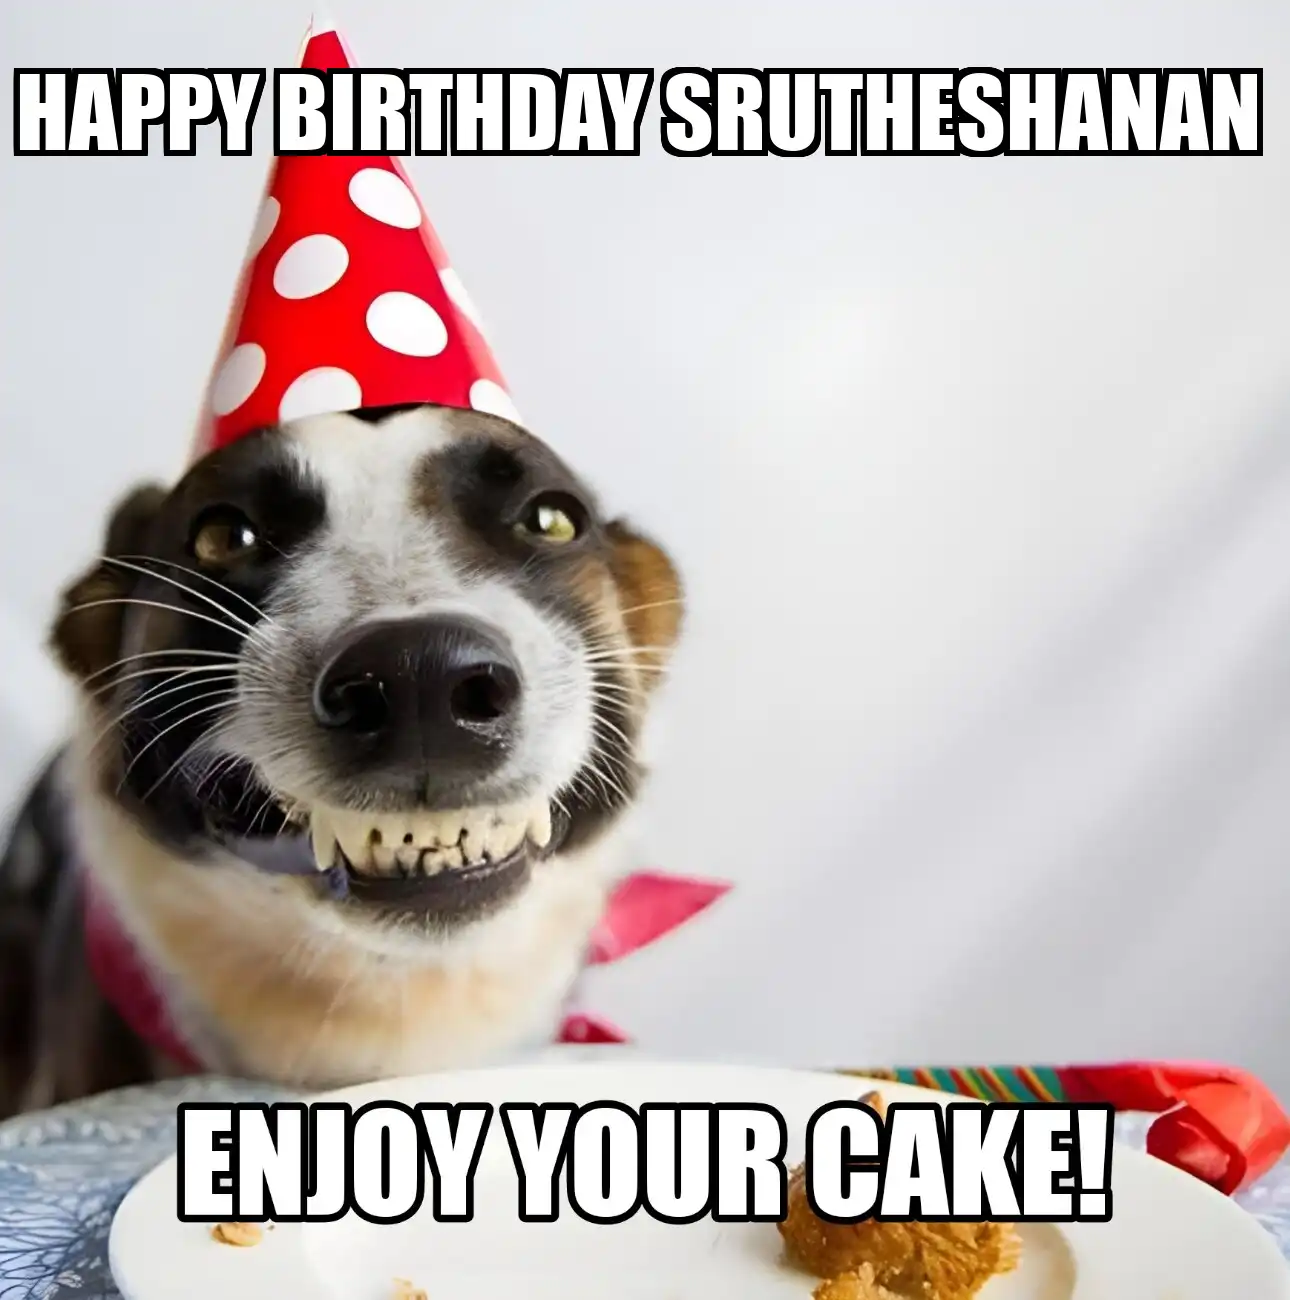 Happy Birthday Srutheshanan Enjoy Your Cake Dog Meme